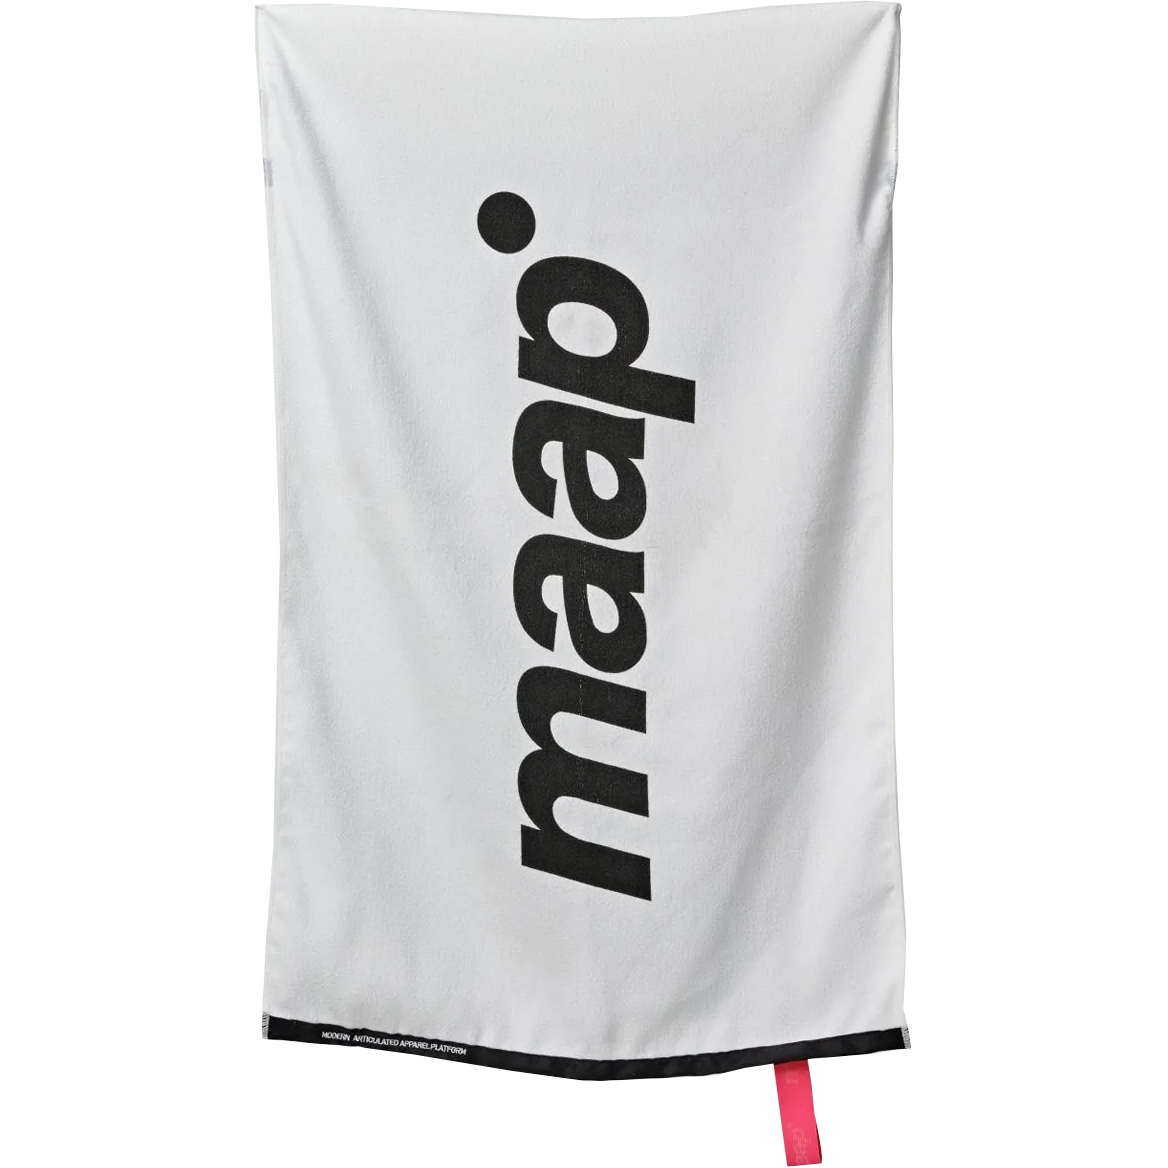 Productfoto van MAAP Training Handdoek - wit